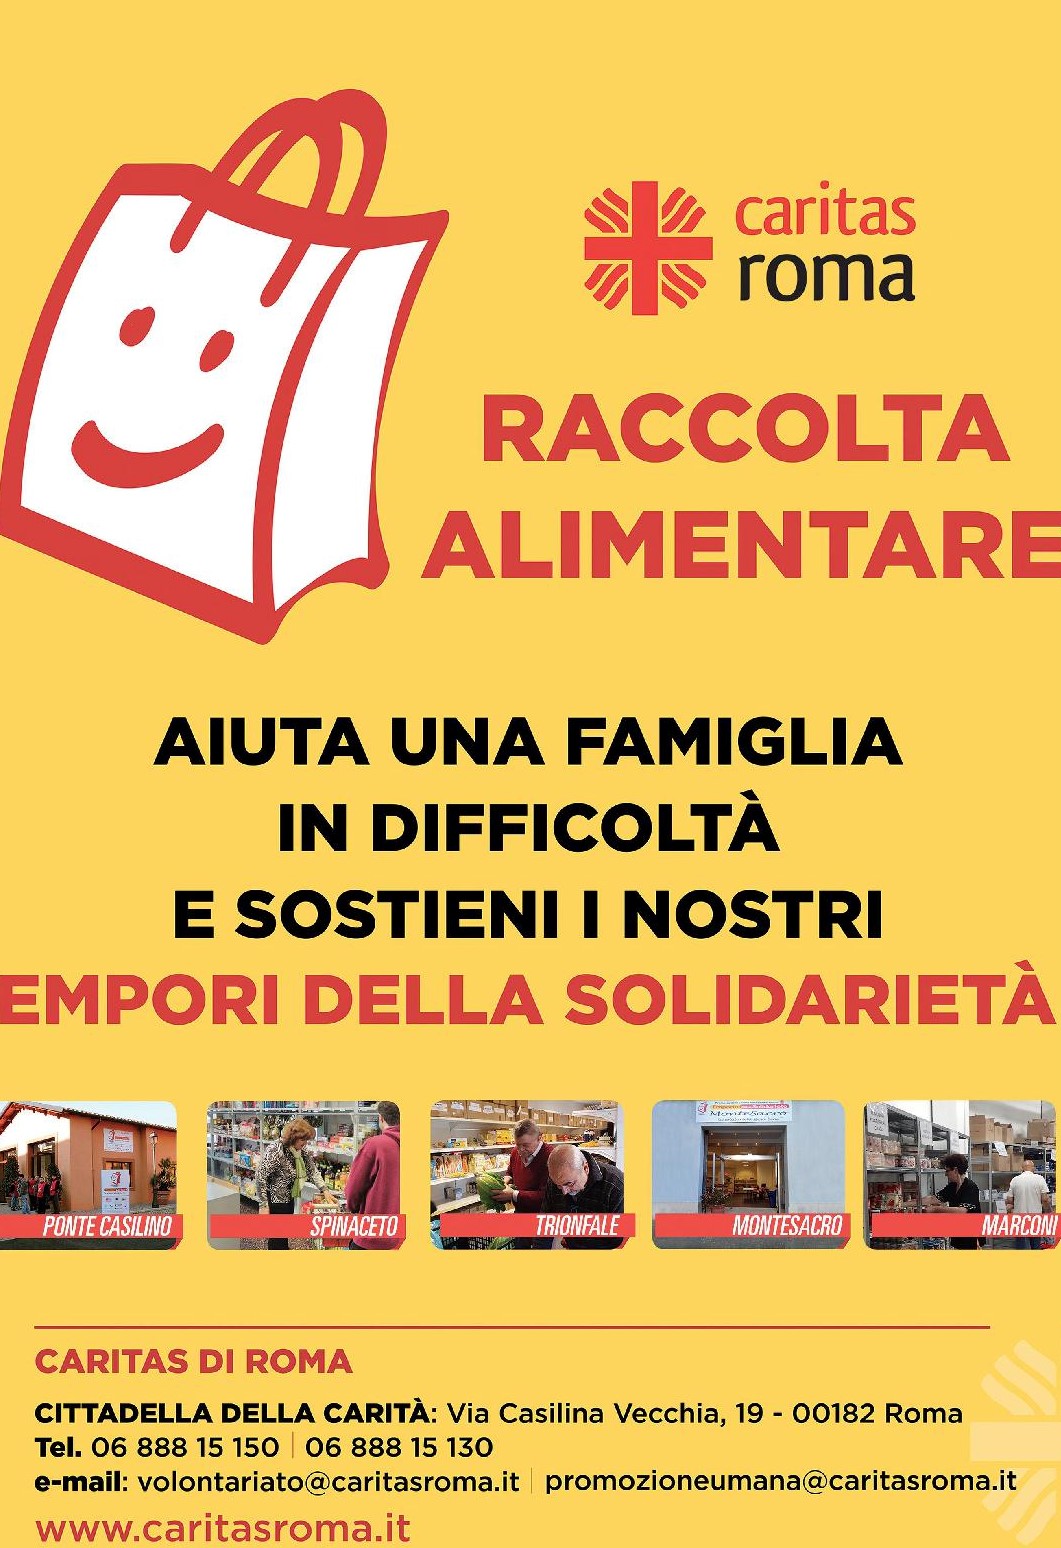 RaccAlim_Caritas_roma_022019 (1)